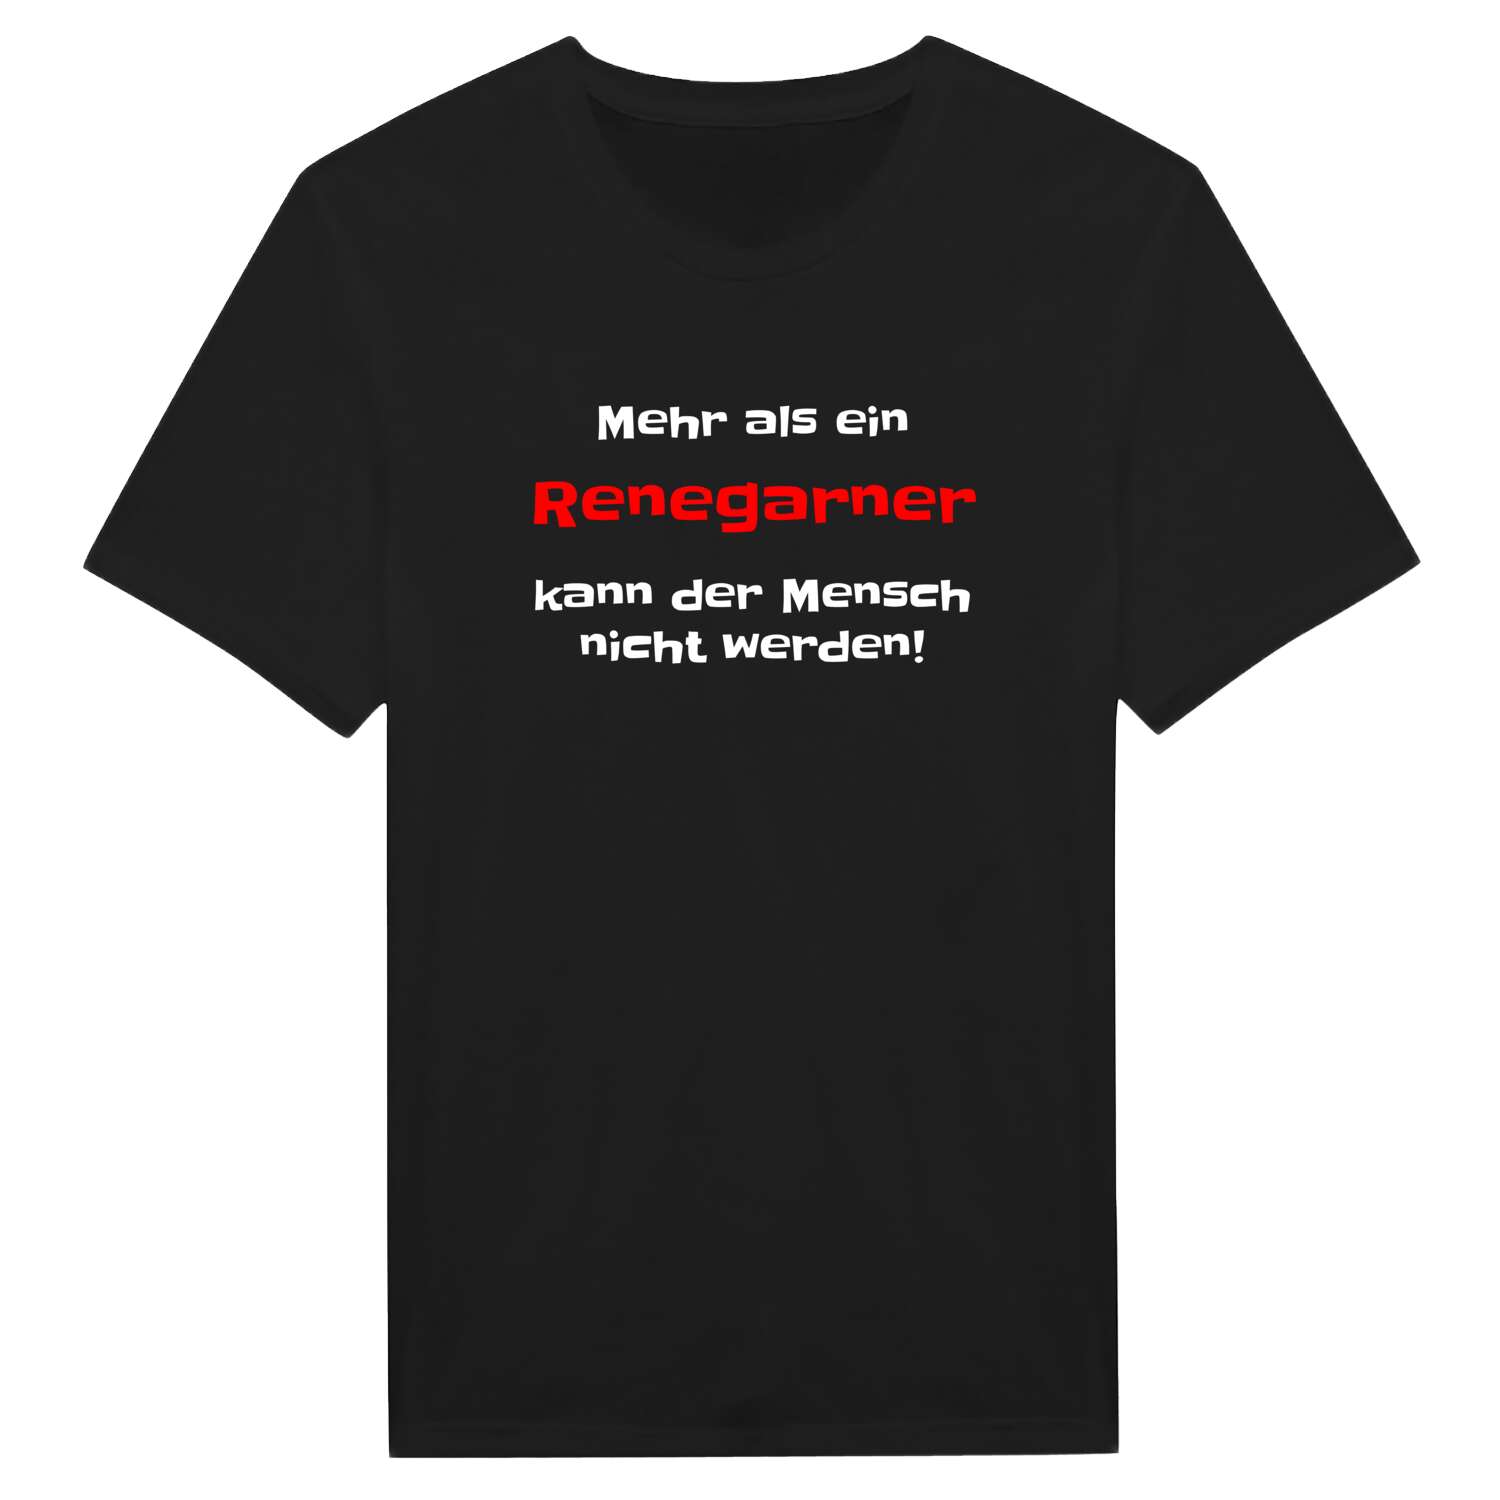 Renegarn T-Shirt »Mehr als ein«